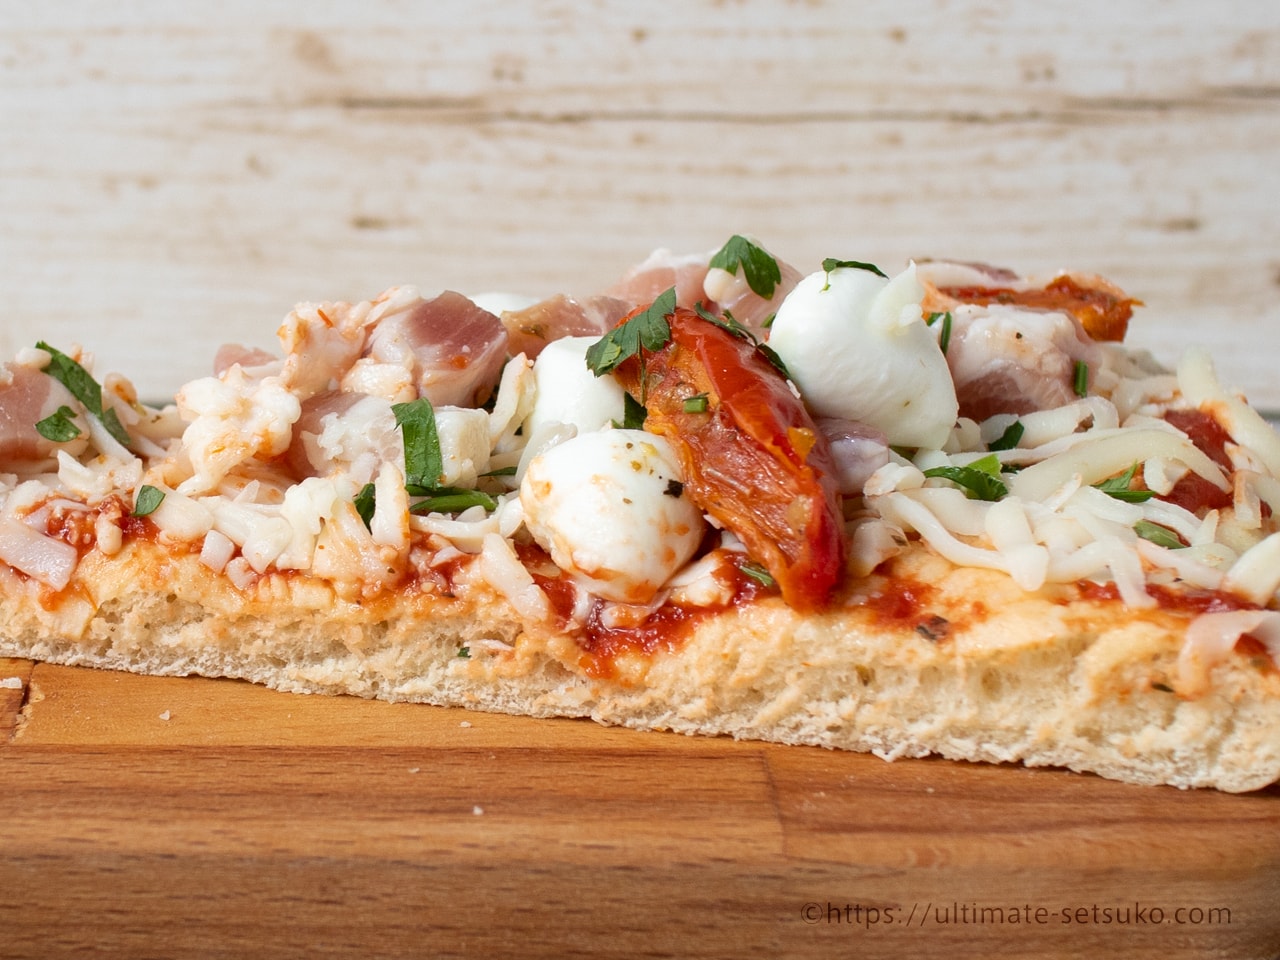 コストコのパンチェッタ モッツアレラチーズピザ 肉の塩気とチーズの淡白な旨みが最高